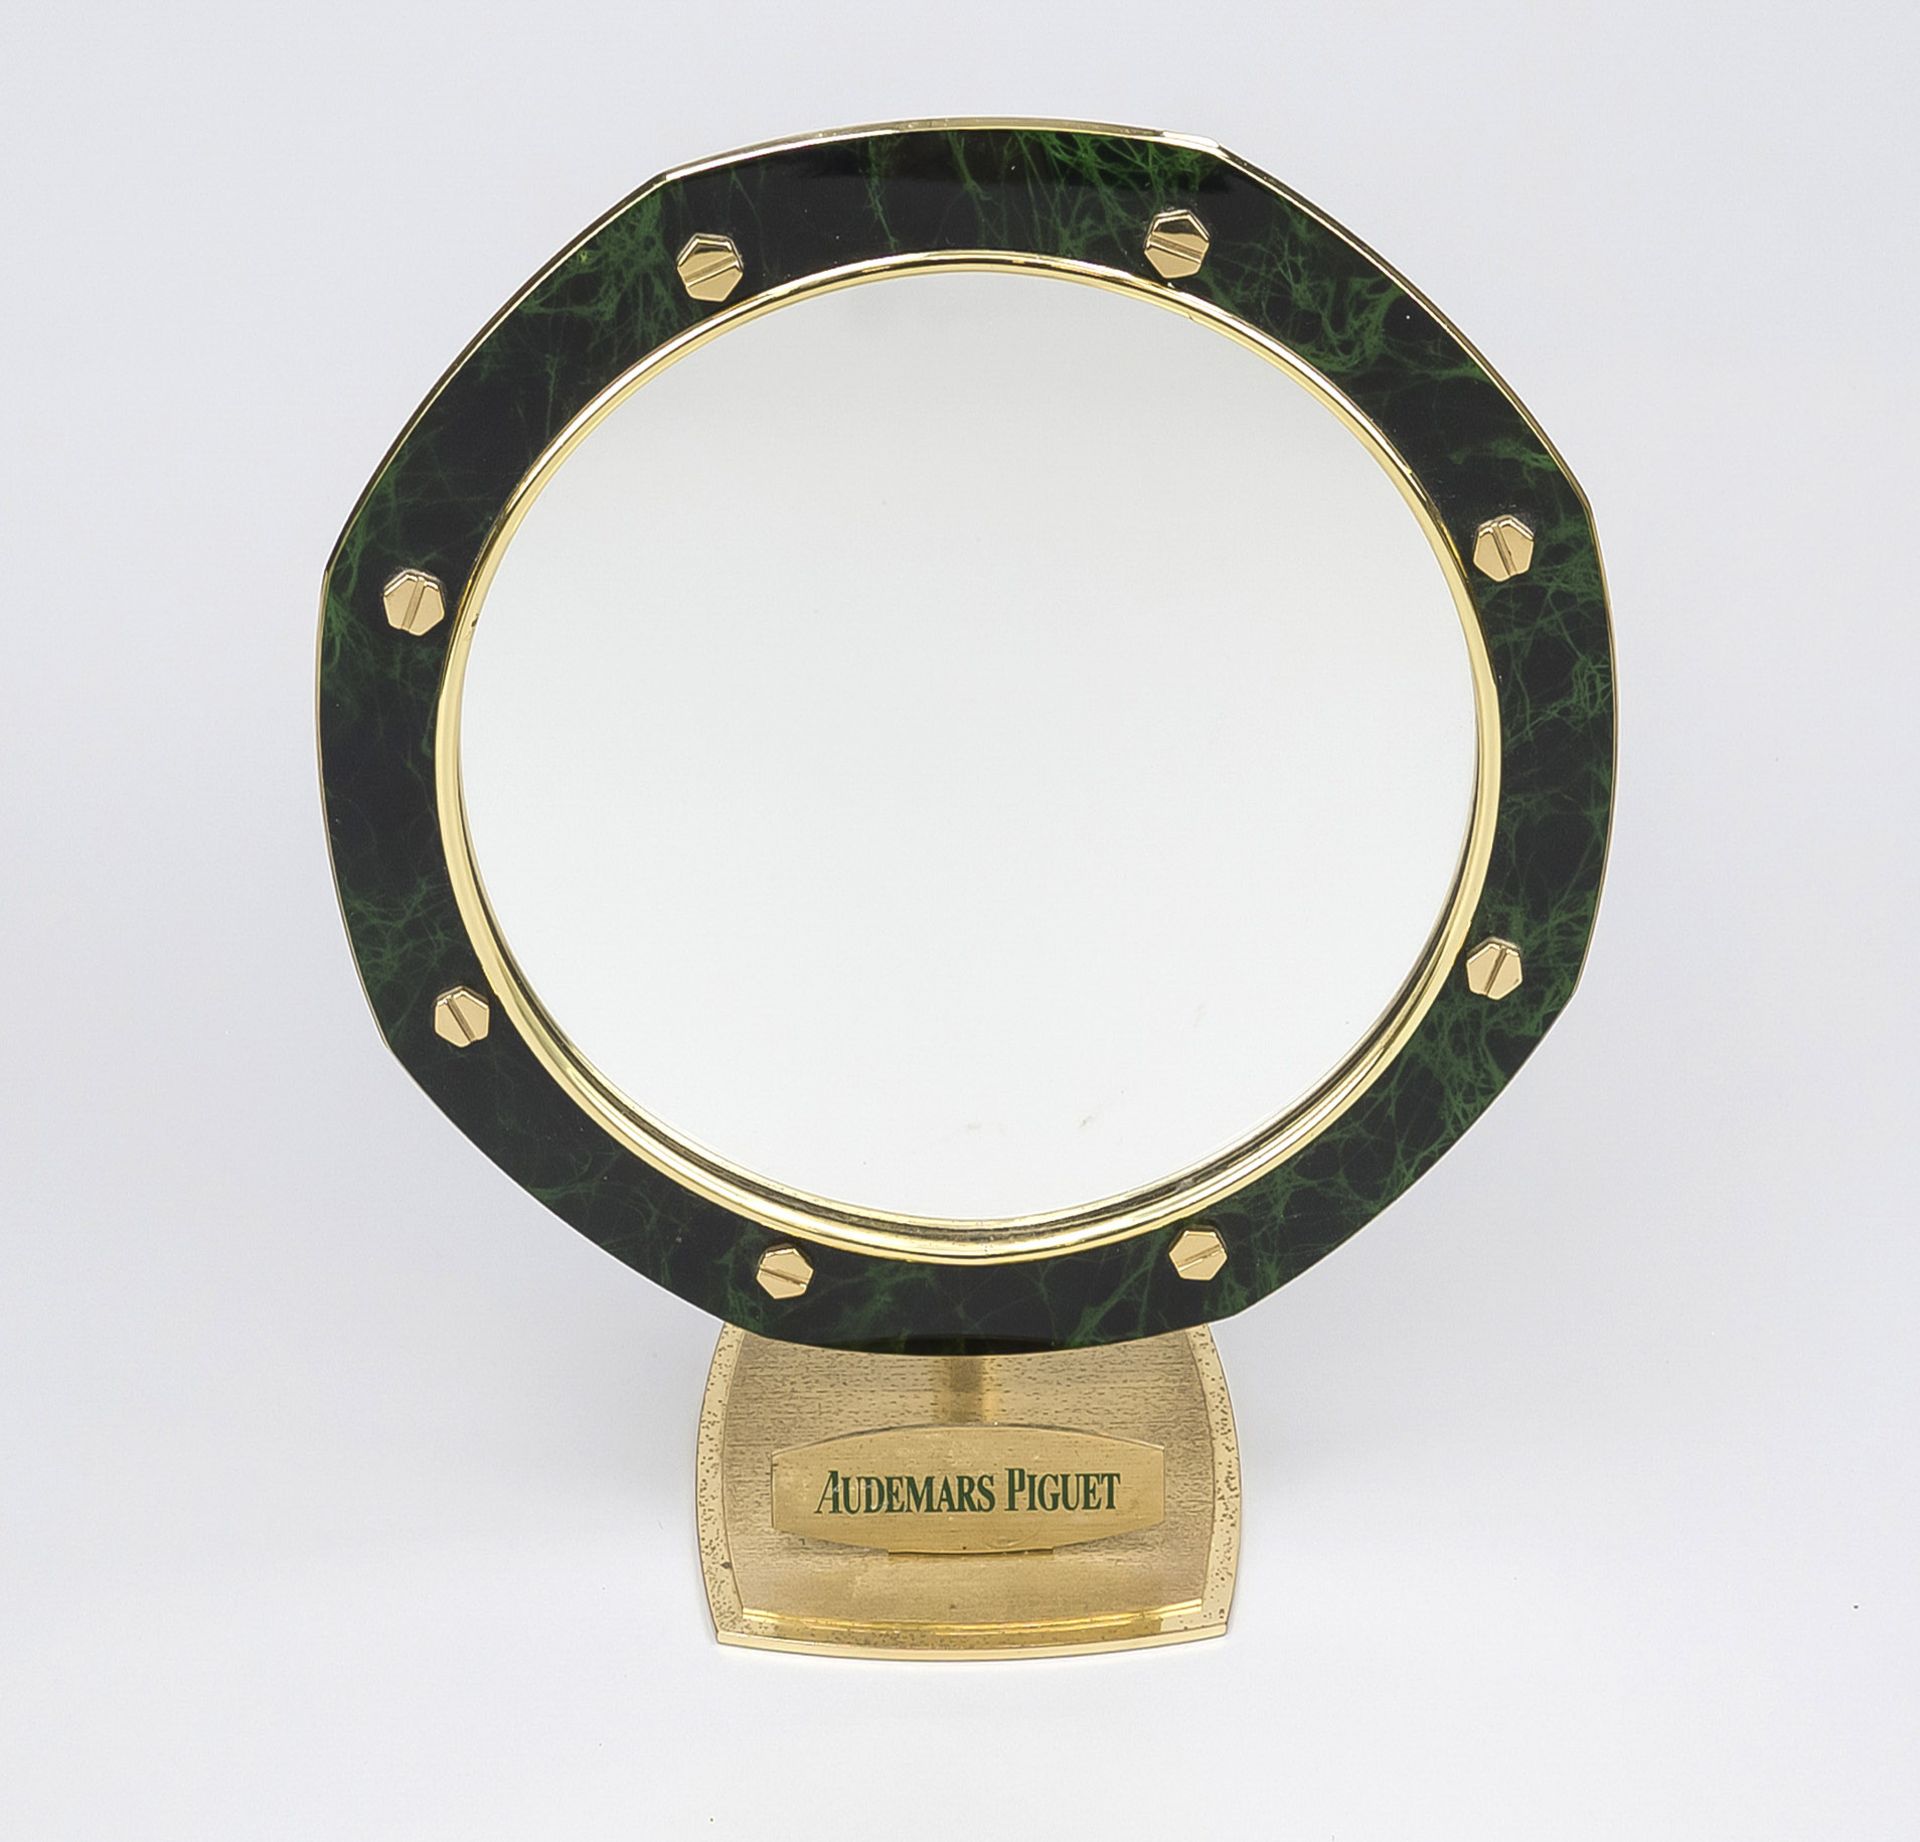 Make-up mirror, Audemars Piguet table mirror, Switzerland, 2nd half 20th century, brass with stone